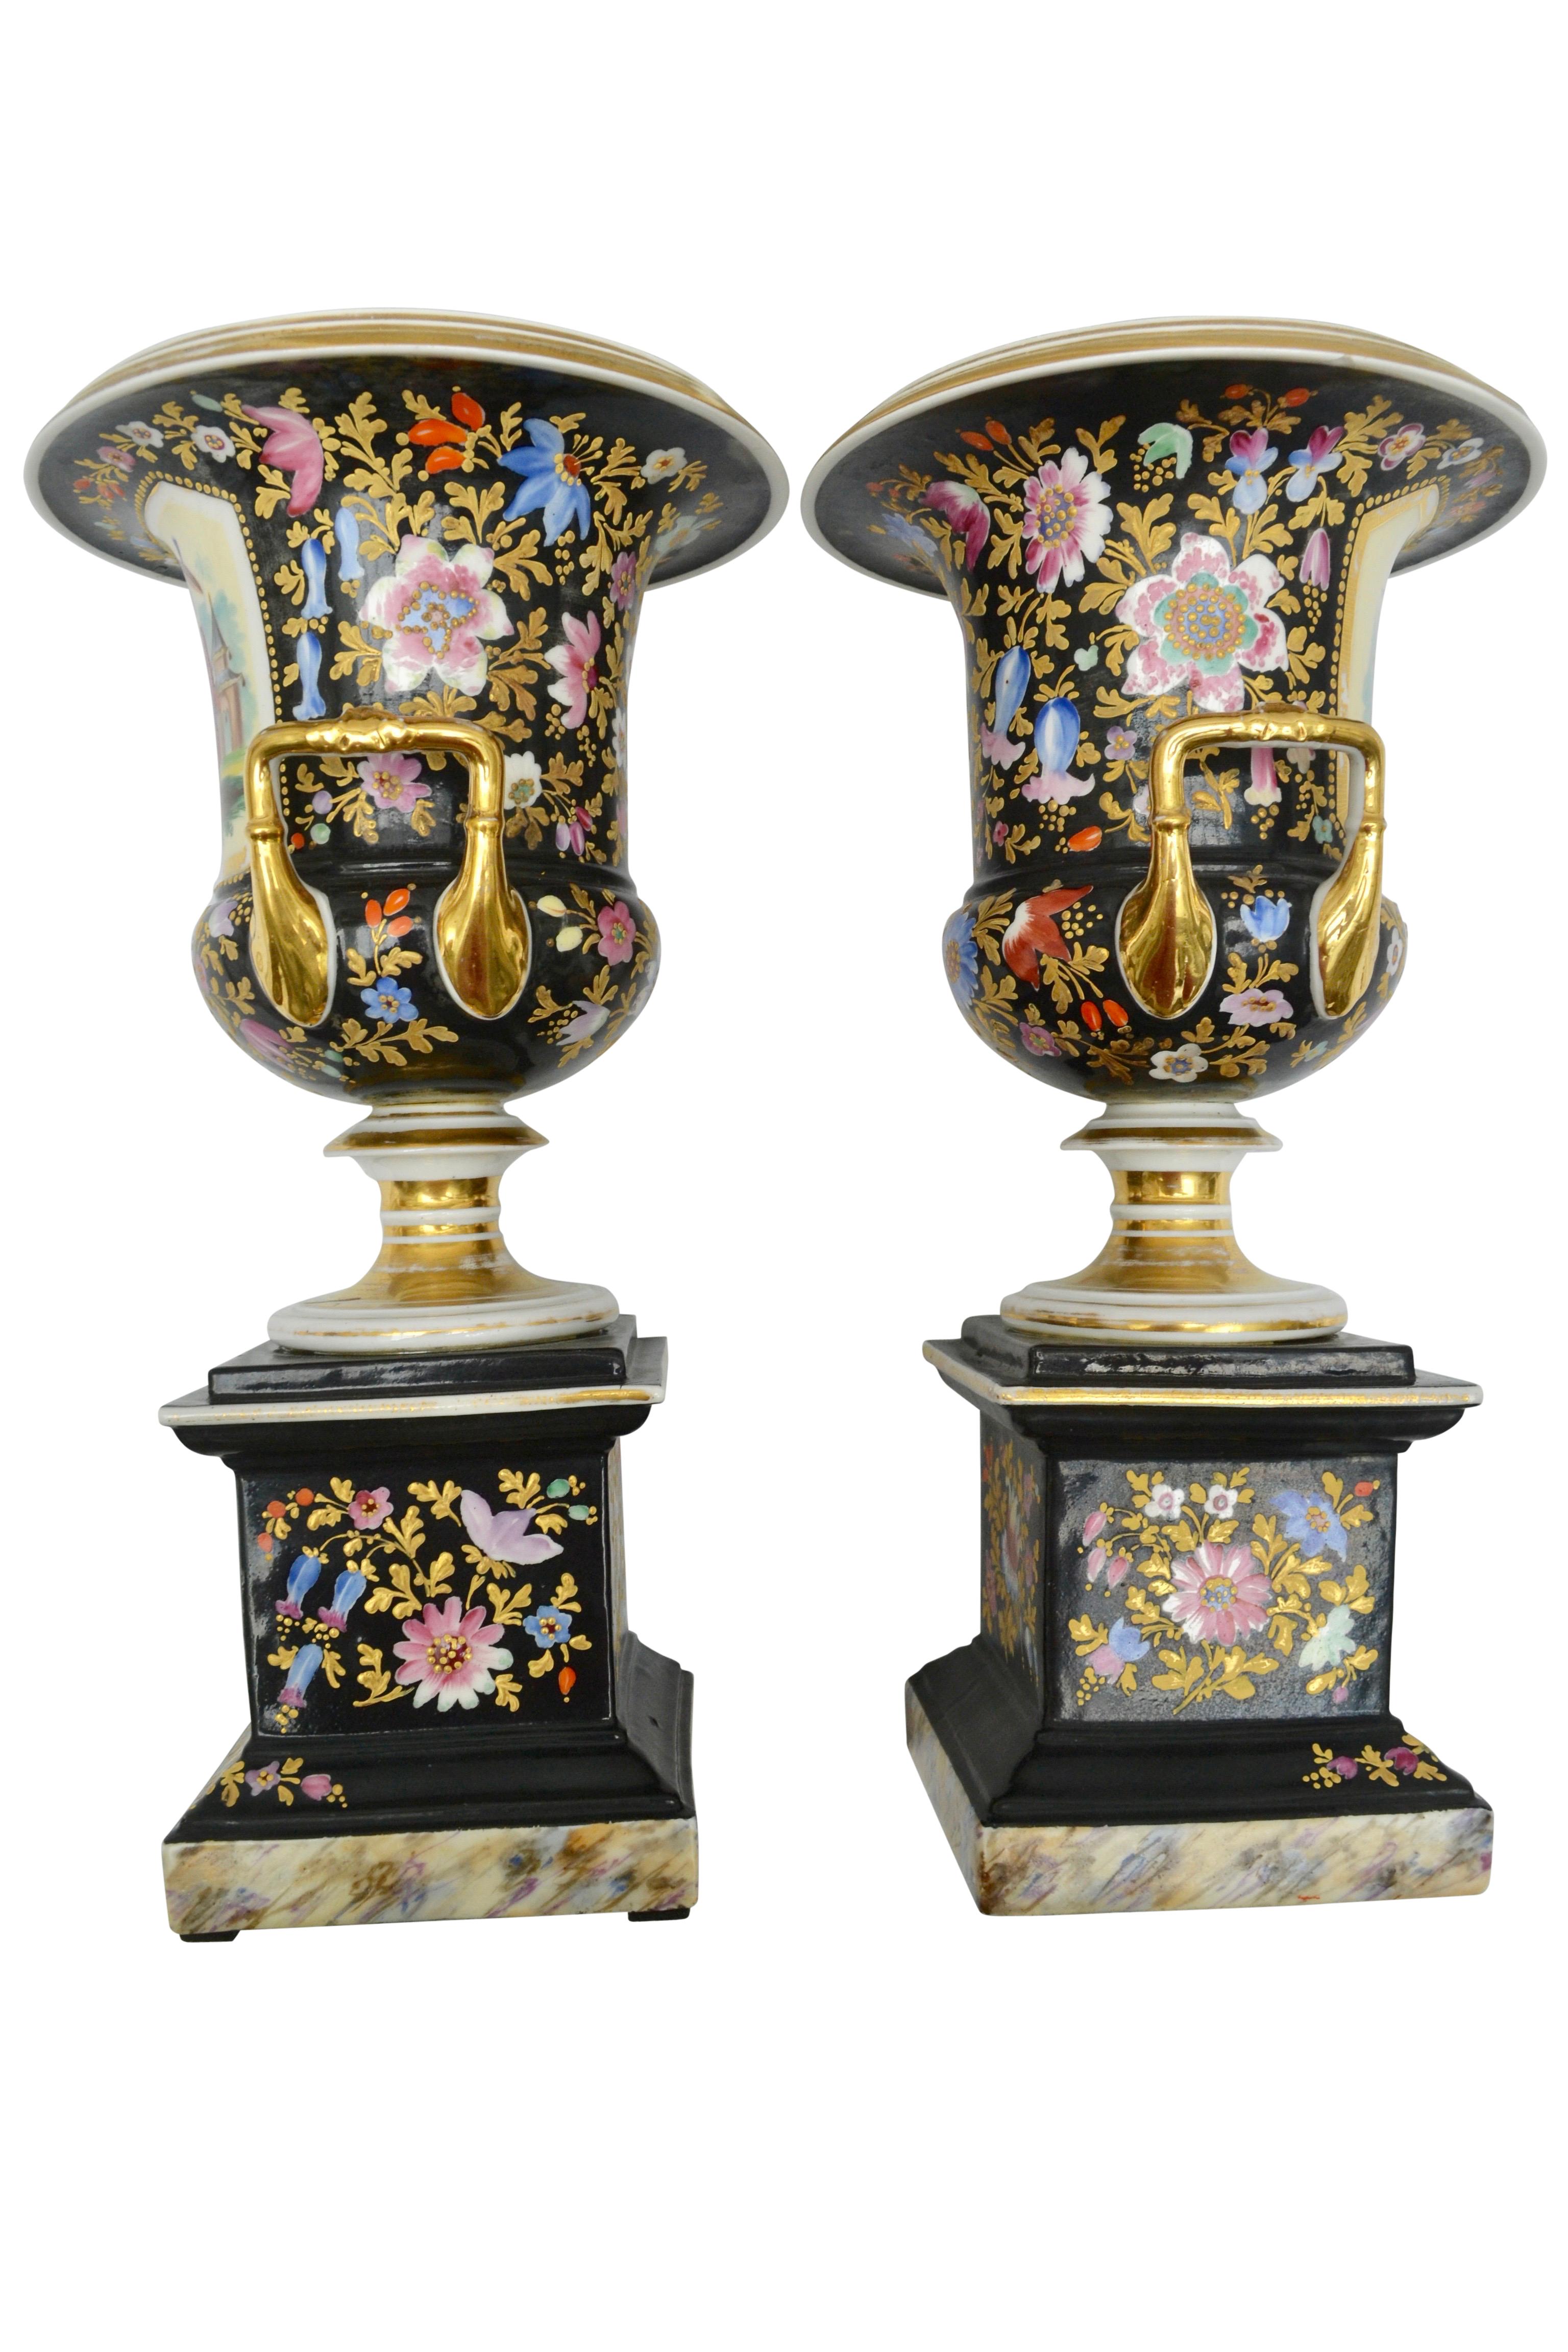 Ein Paar französische Urnen in Campana-Form mit gemaltem und vergoldetem figuralen und floralen Chinoiserie-Dekor, das in der Mitte des 19. Jahrhunderts in Europa, insbesondere in Frankreich und England, sehr beliebt war. Die Vasen sind unsigniert,